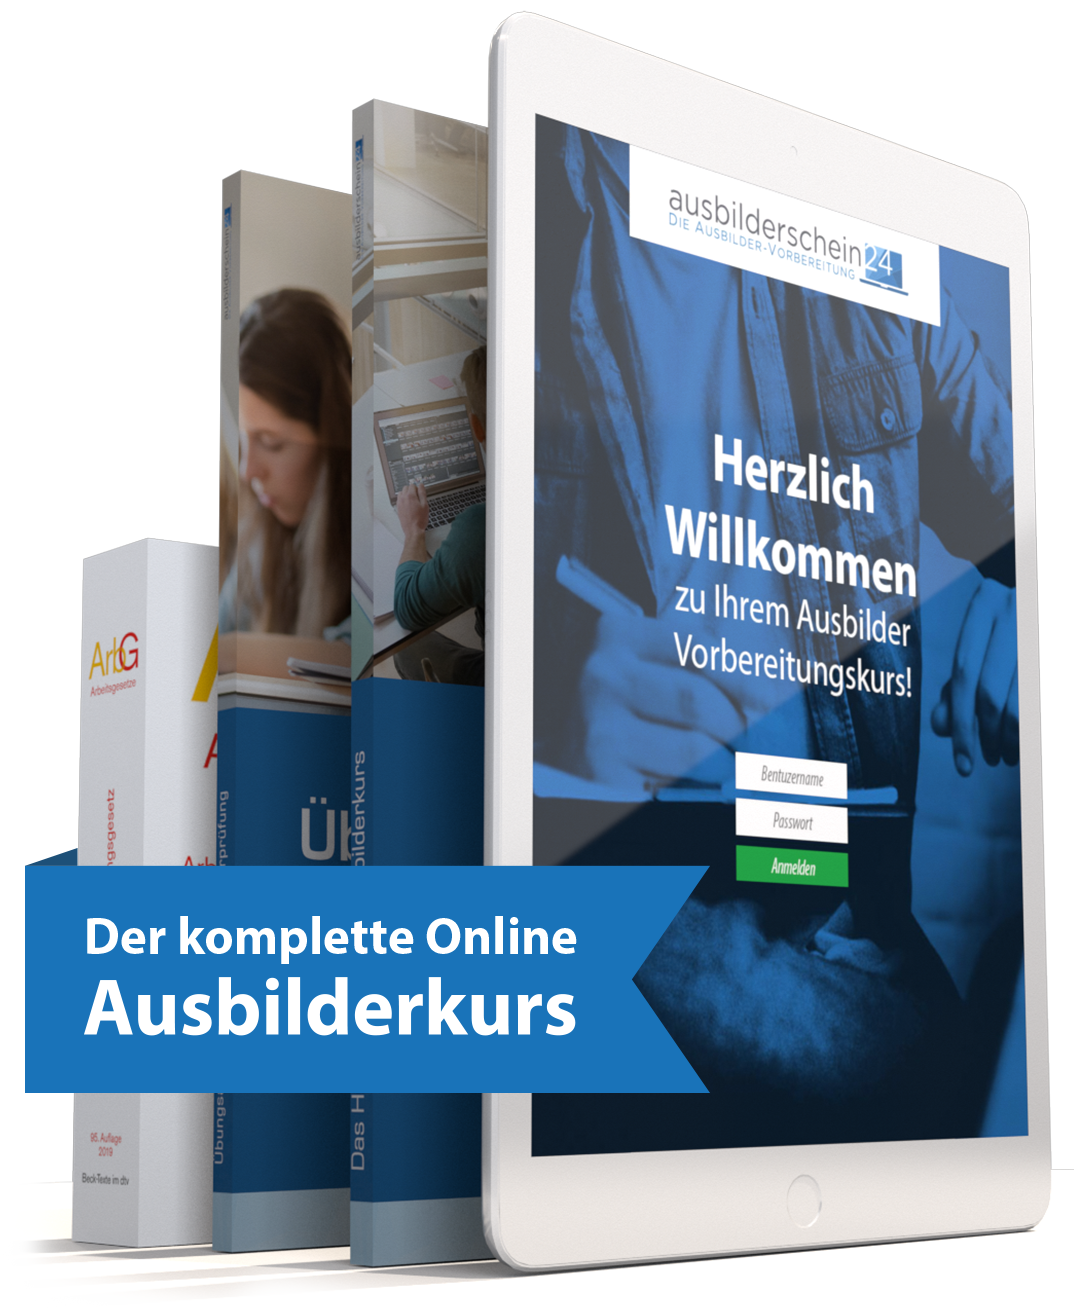 Online Ausbilderkurs Angebot Inhalt mit ArbG, Übungsheft, Handbuch und Onlinekurs